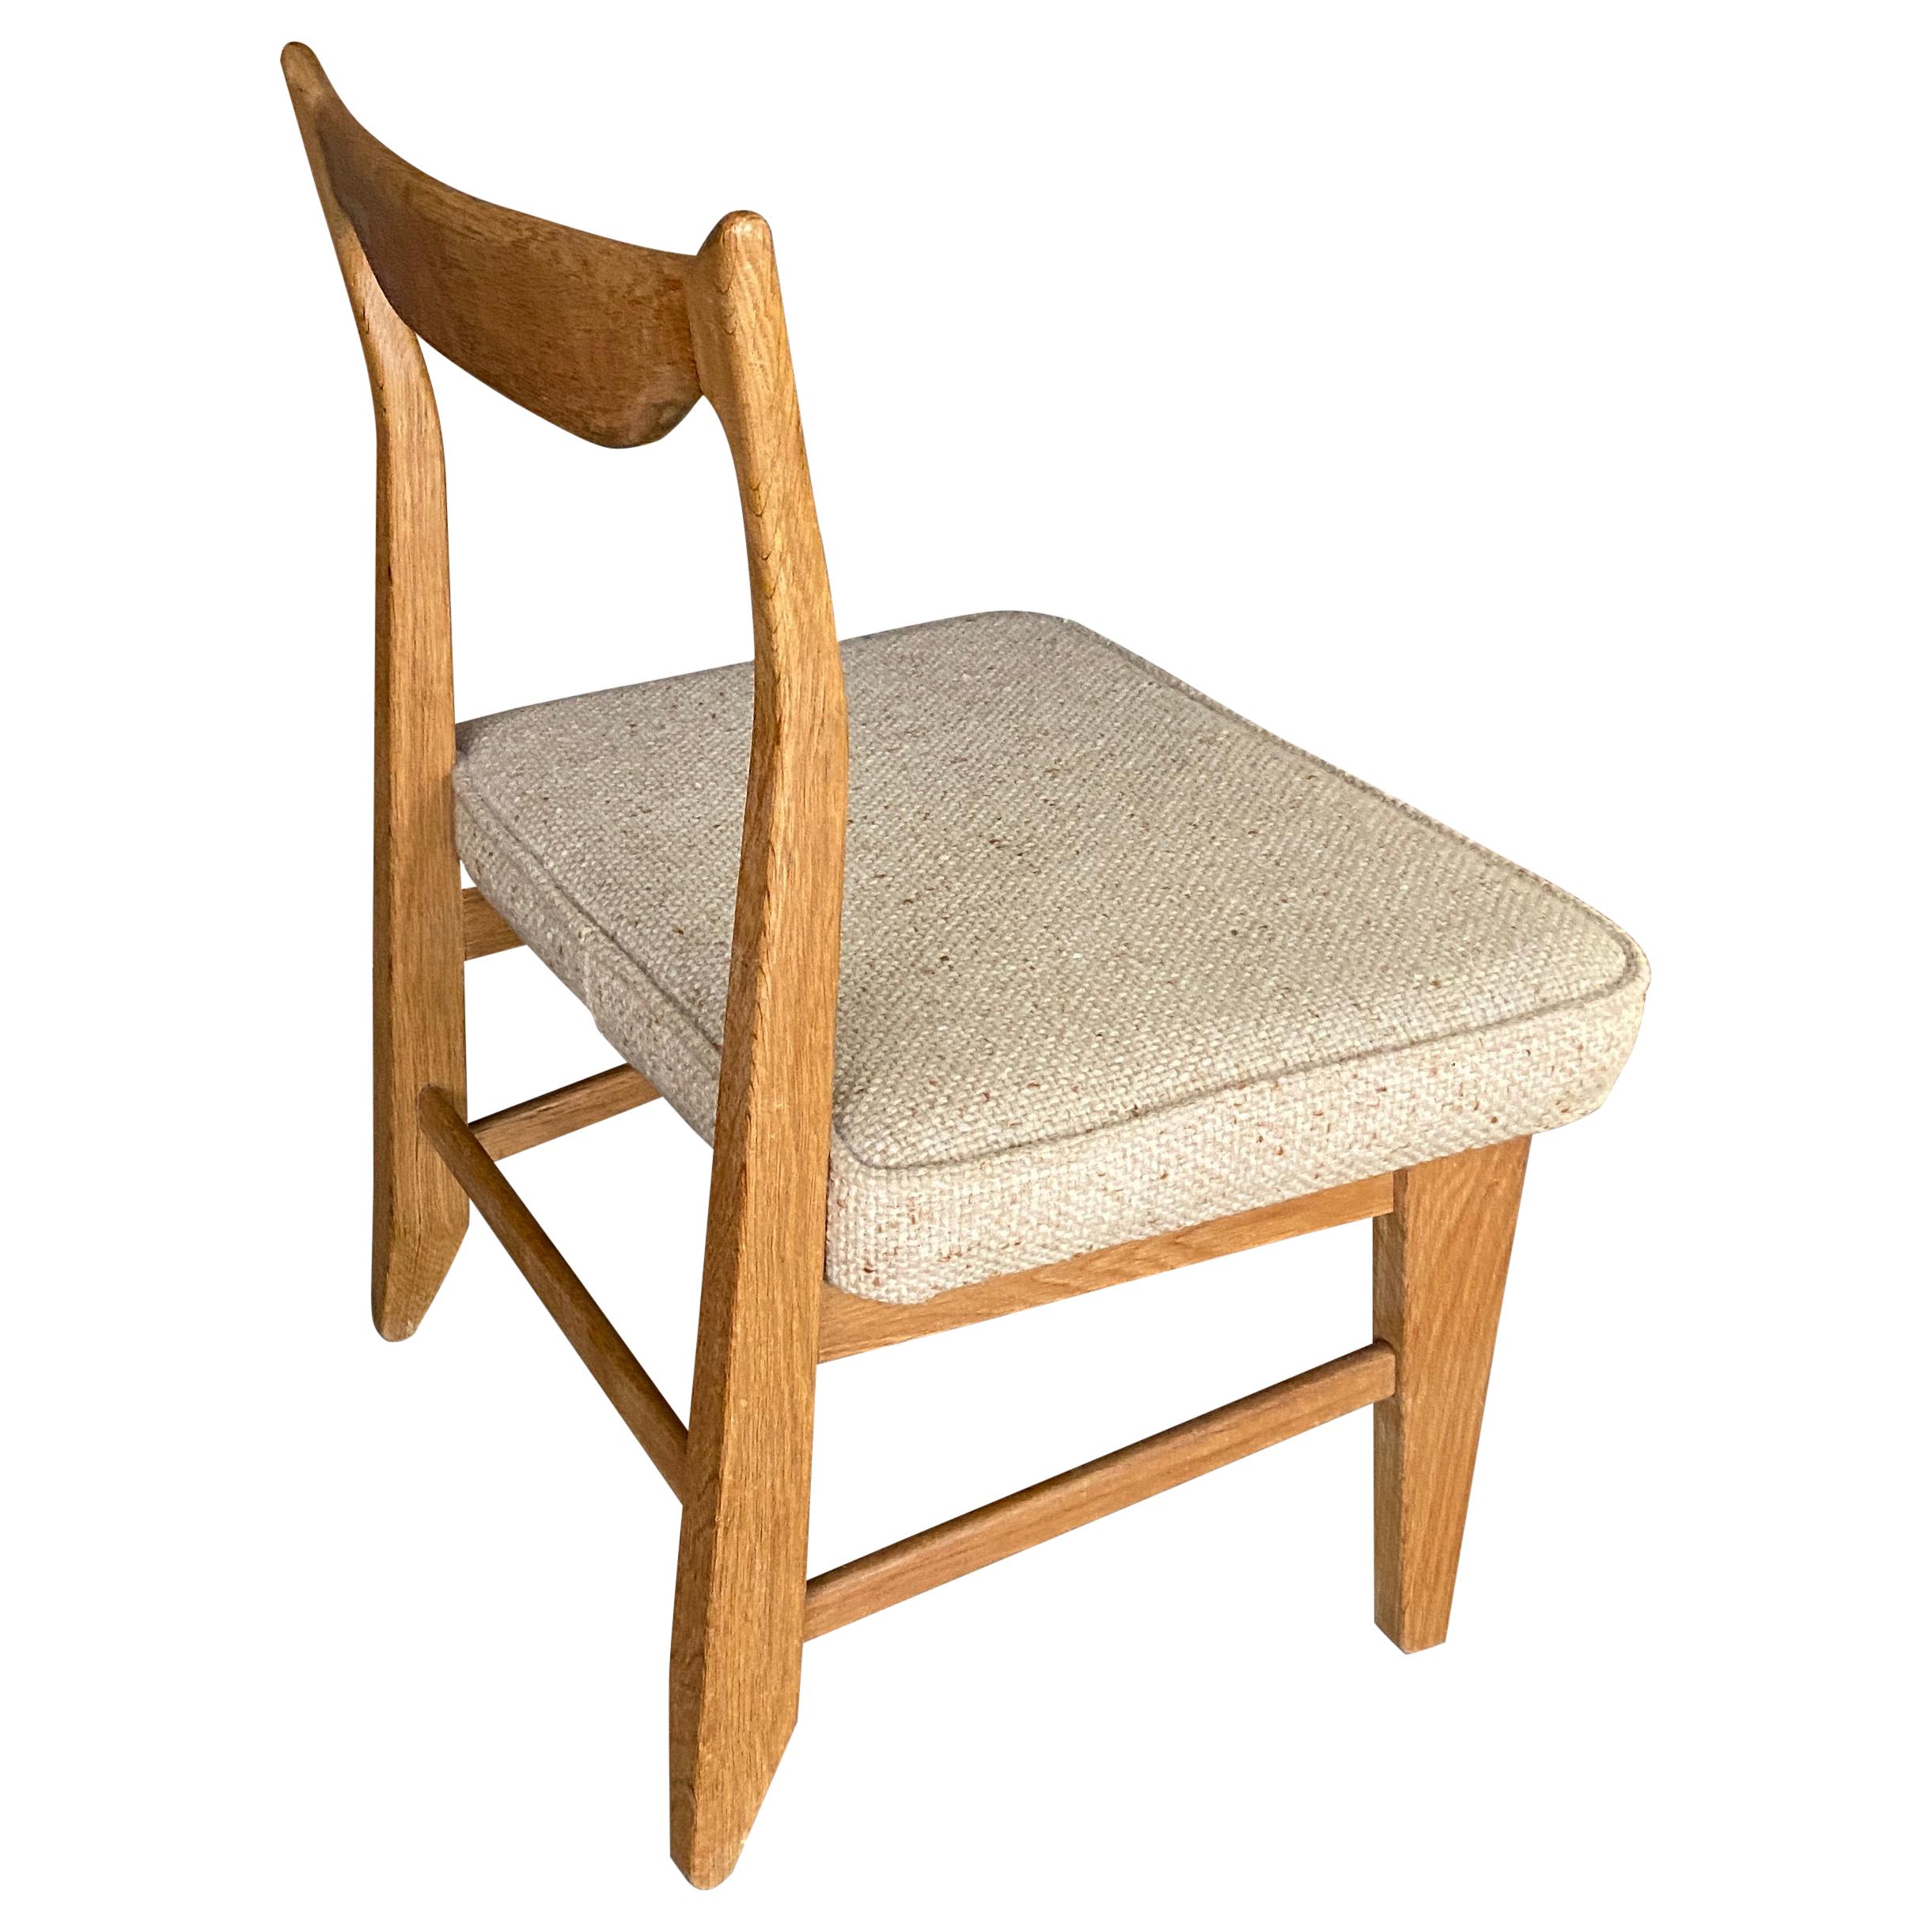 Guillerme et Chambron, Rare Low Chair "MARIE CLAIRE" Votre Maison Edition, 1970